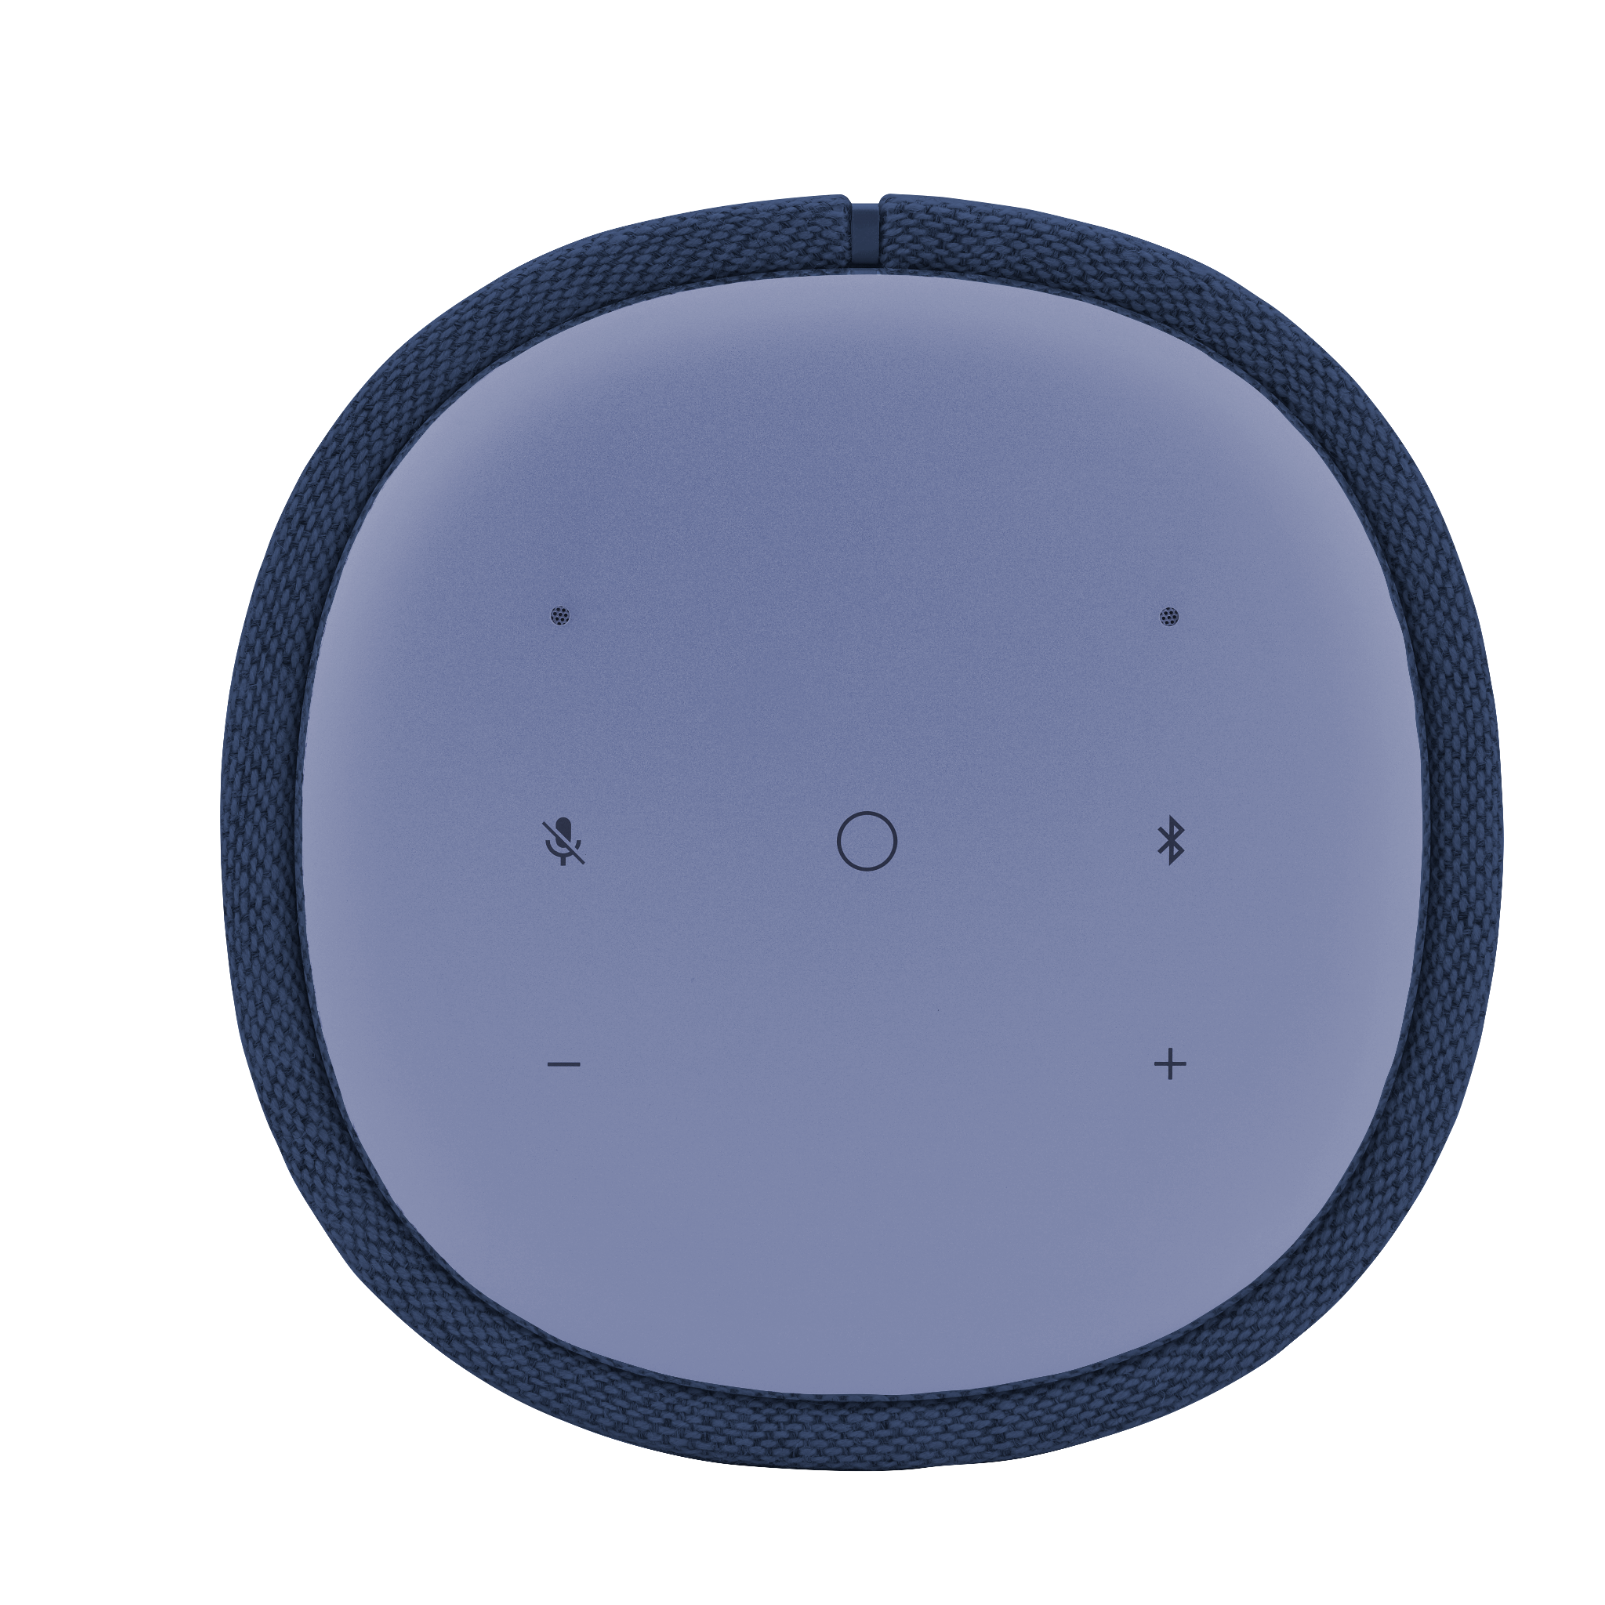 Harman Kardon Citation One MKII - Blue - All-in-one smart speaker with room-filling sound - Detailshot 2